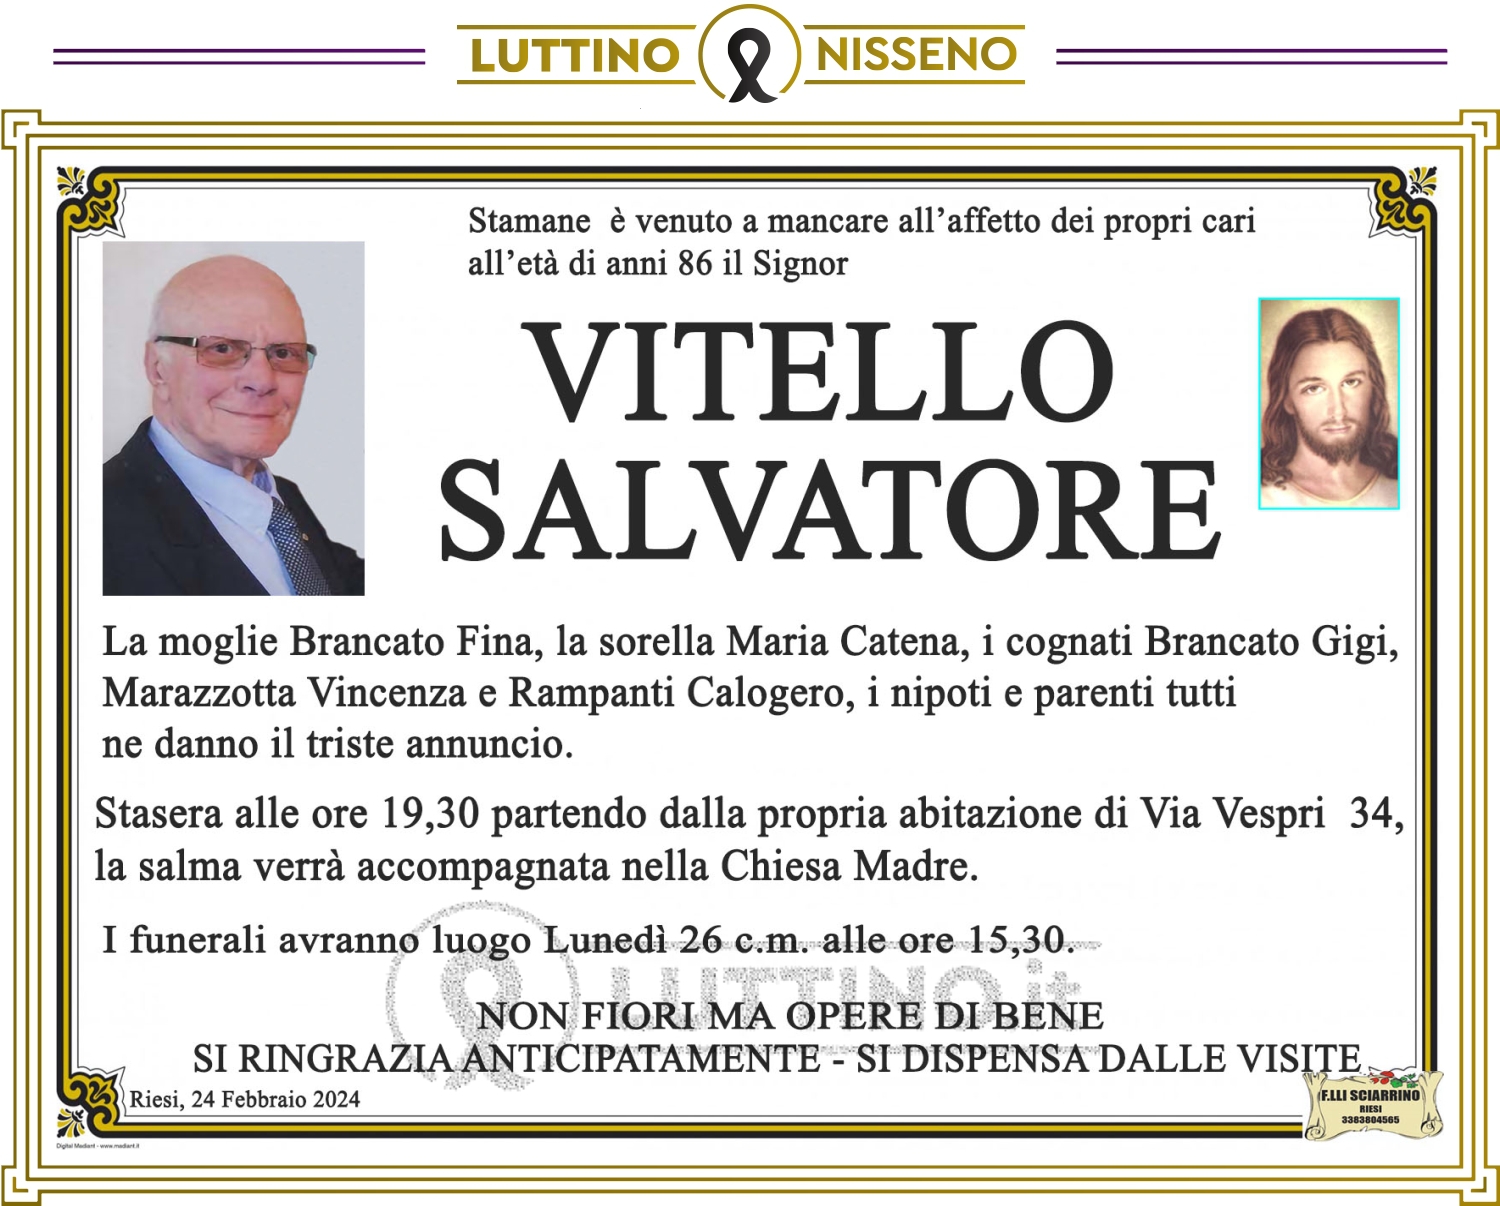 Salvatore Vitello